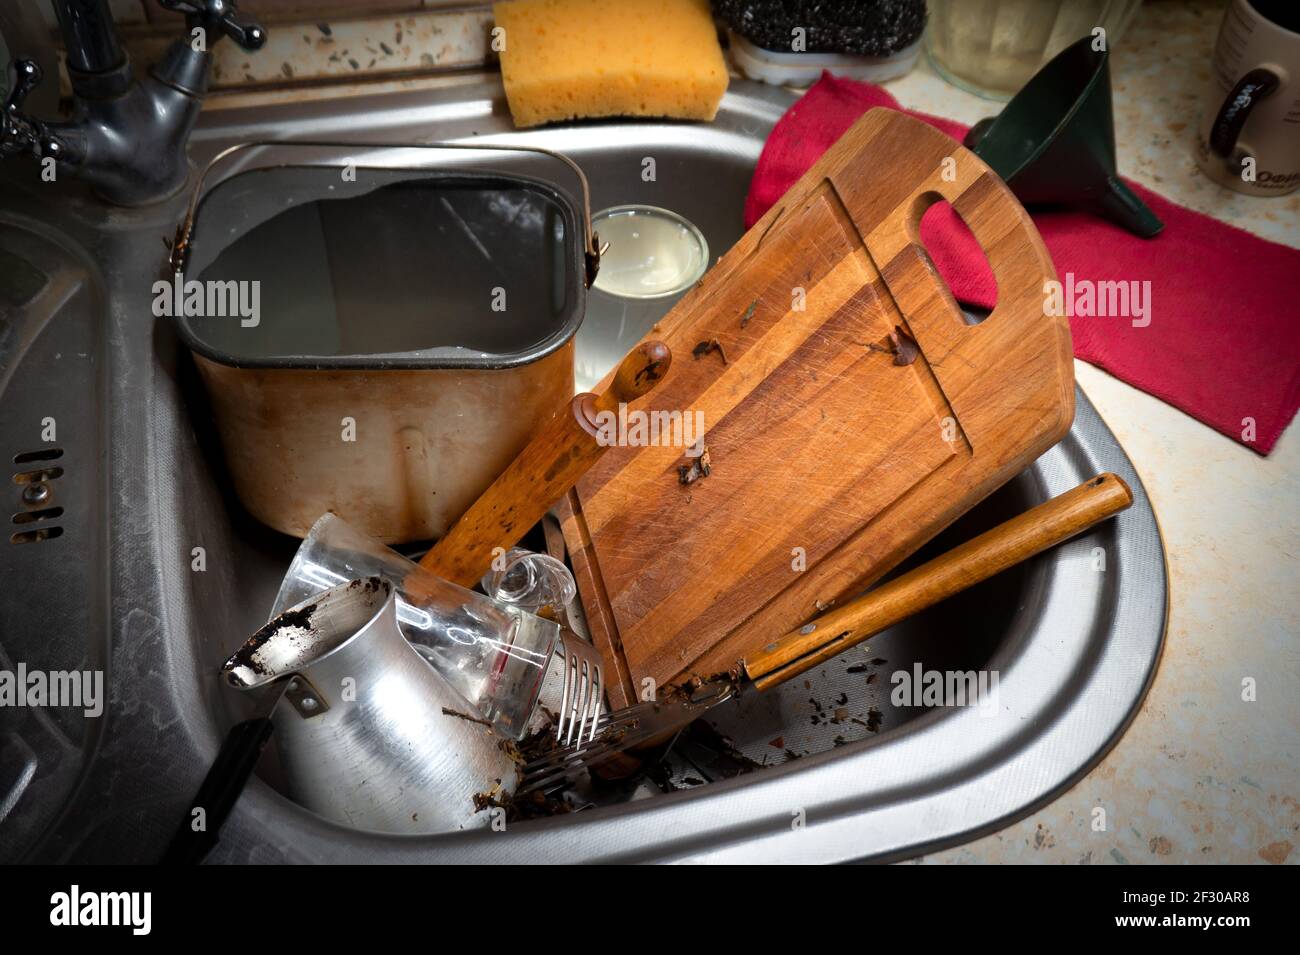 Viel schmutziges Geschirr und ein Durcheinander in der Spülbecken in der Küche Stockfoto